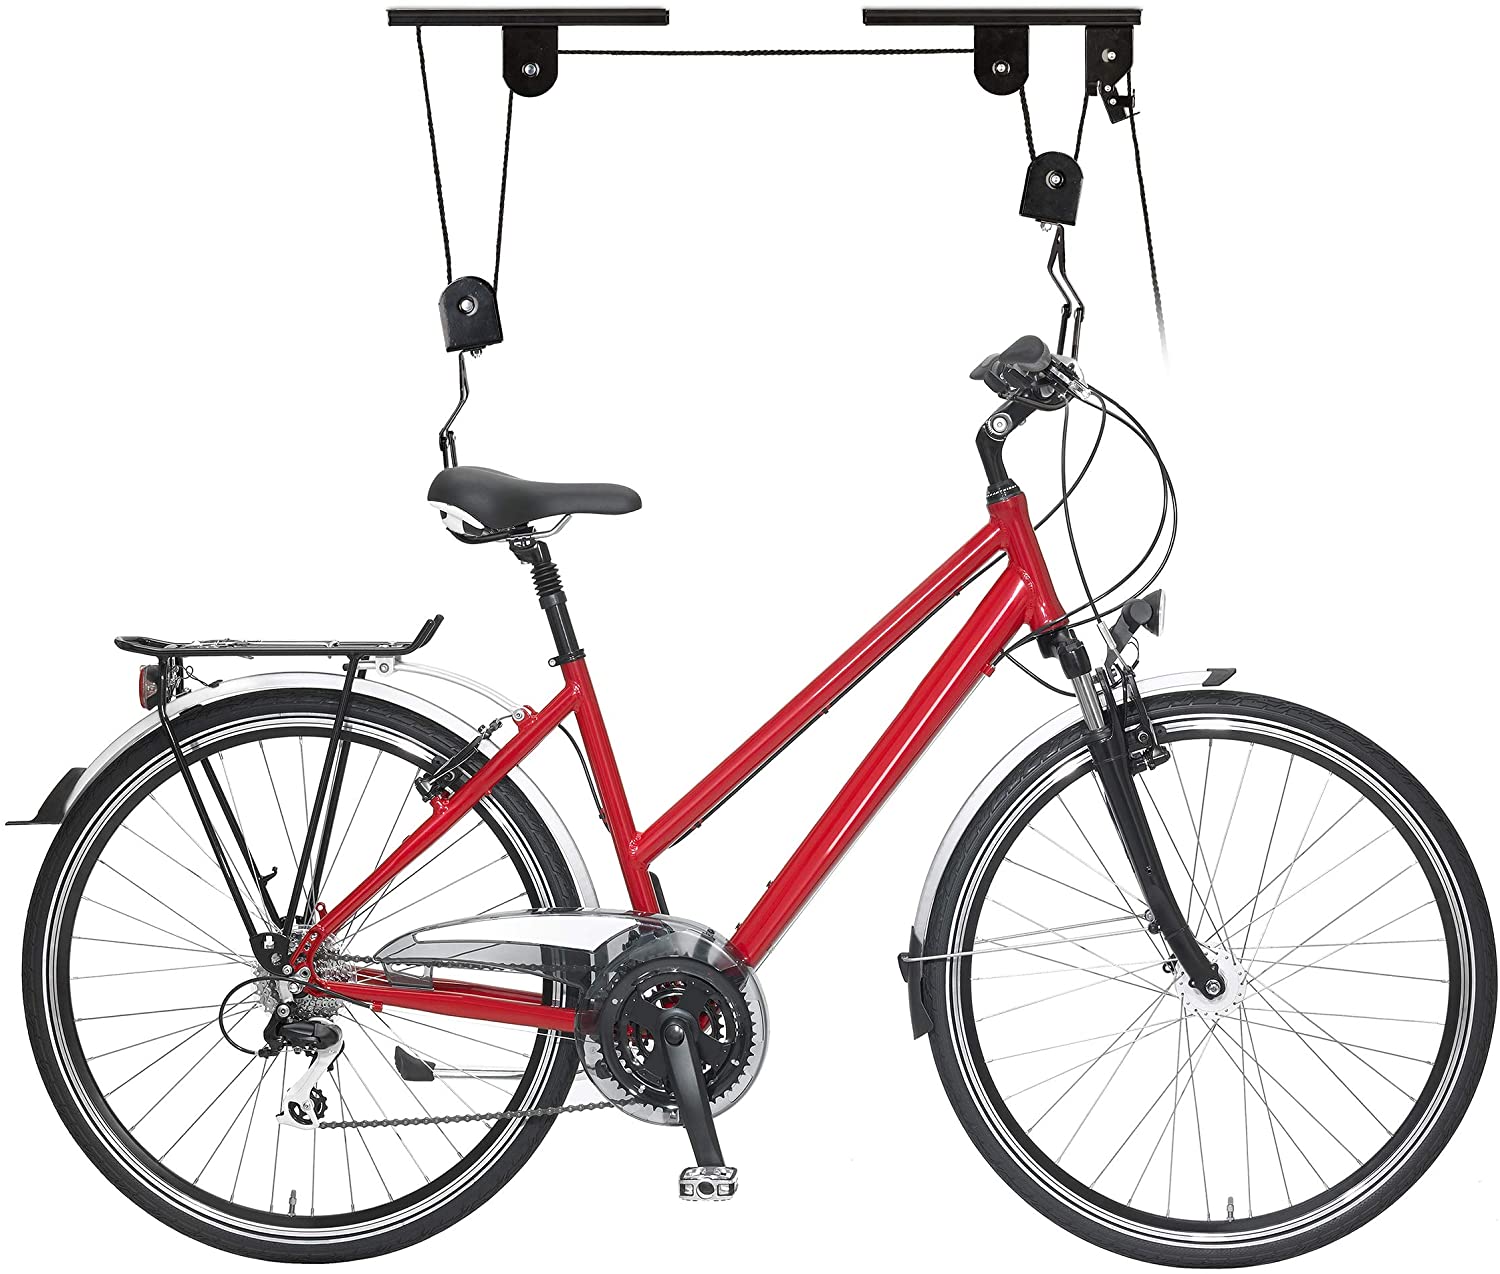 accessori utili per la bicicletta - supporto da soffitto